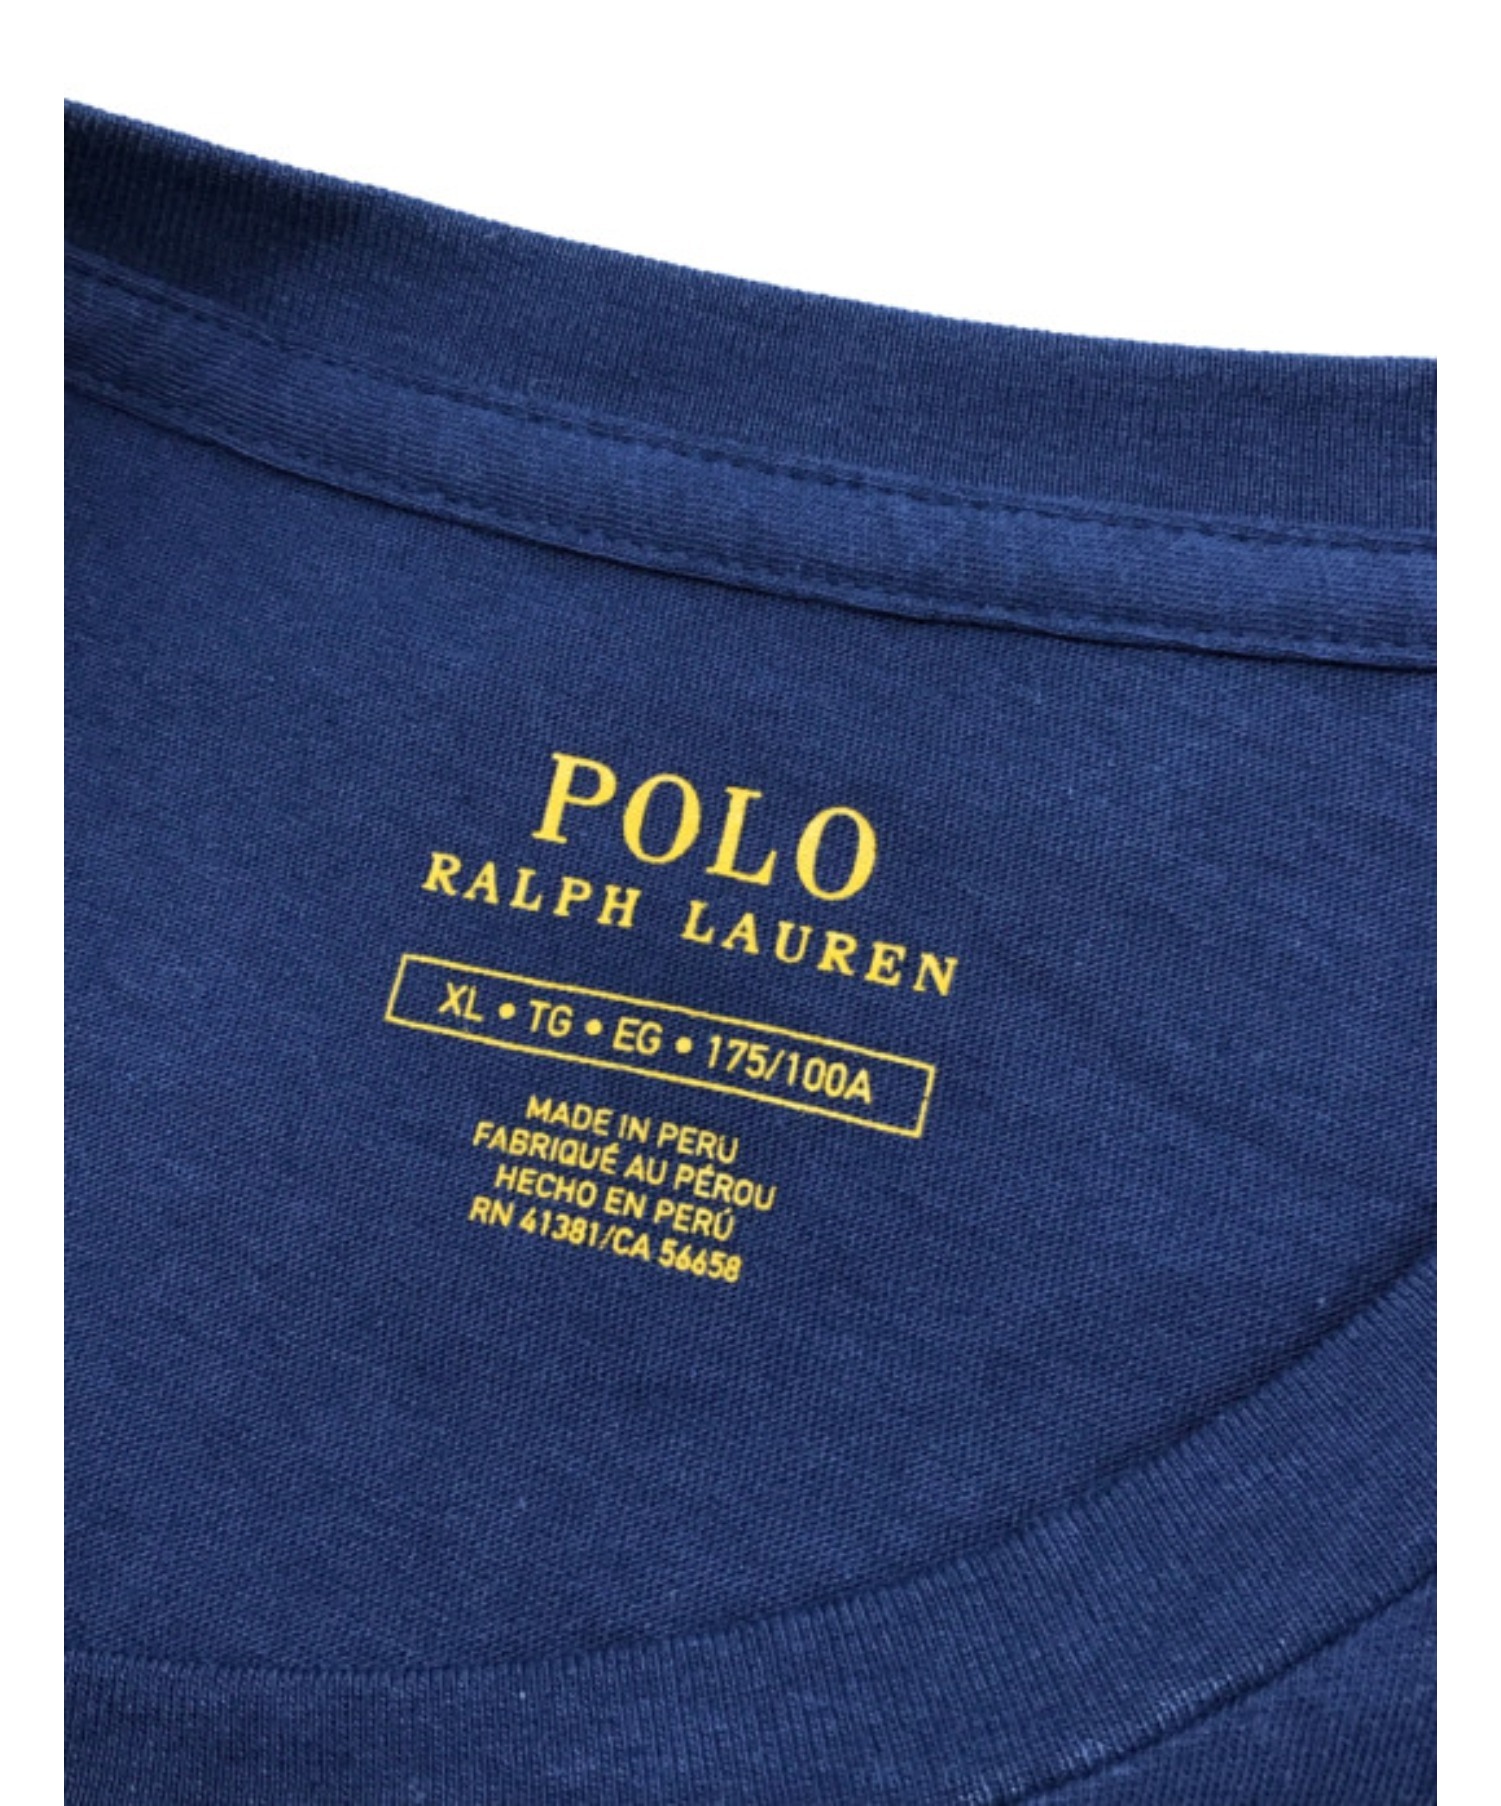 POLO RALPH LAUREN (ポロ・ラルフローレン) Tシャツワンピース ネイビー サイズ:XL 未使用品